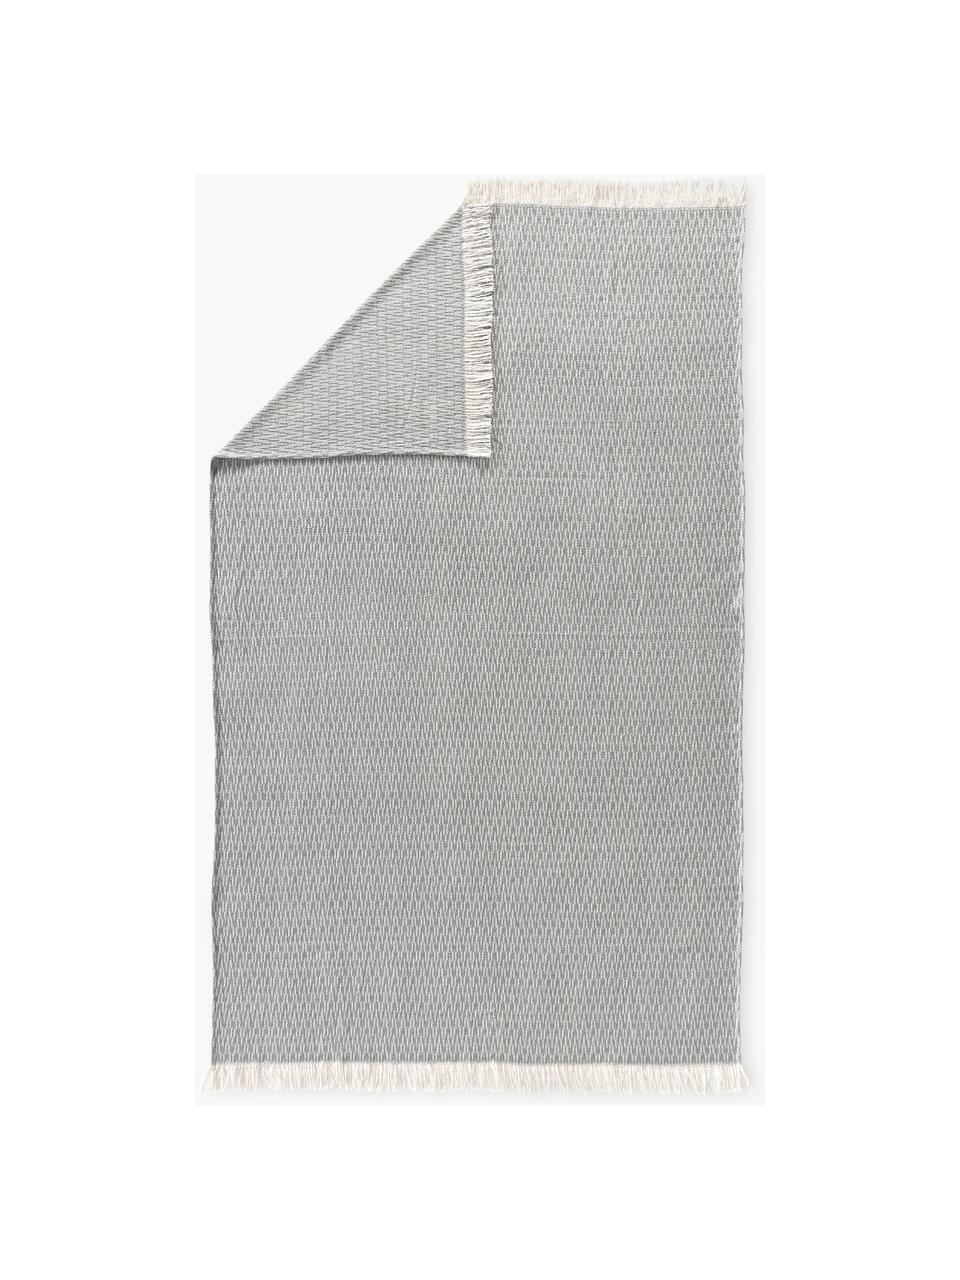 Decke Alistair mit Fischgrätmuster und Fransen, 80% Baumwollle
20% Polyacrylic, Dunkelgrau, Off White, B 130 x L 170 cm